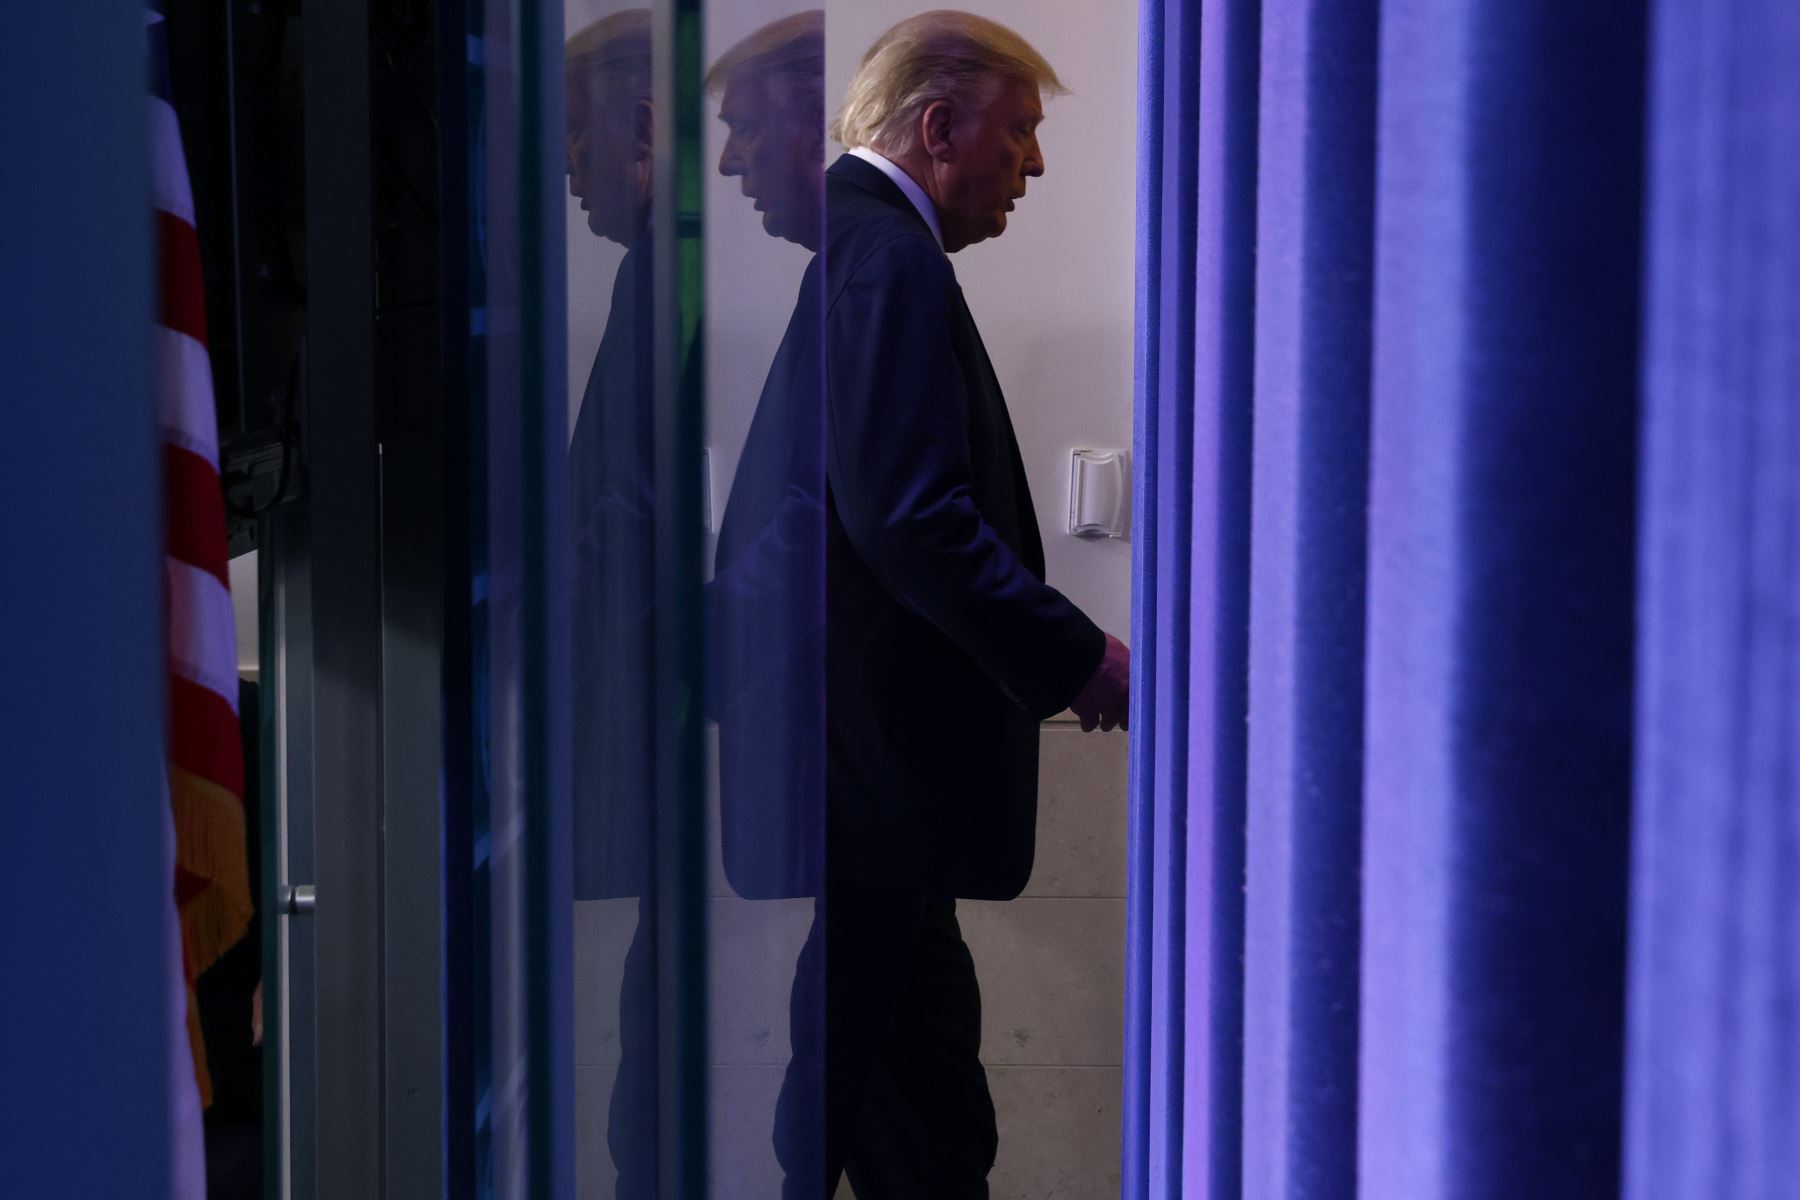 El presidente de los Estados Unidos, Donald Trump, abandona la sala de reuniones después de que se reportaron disparos cerca de la Casa Blanca.
Foto: AFP